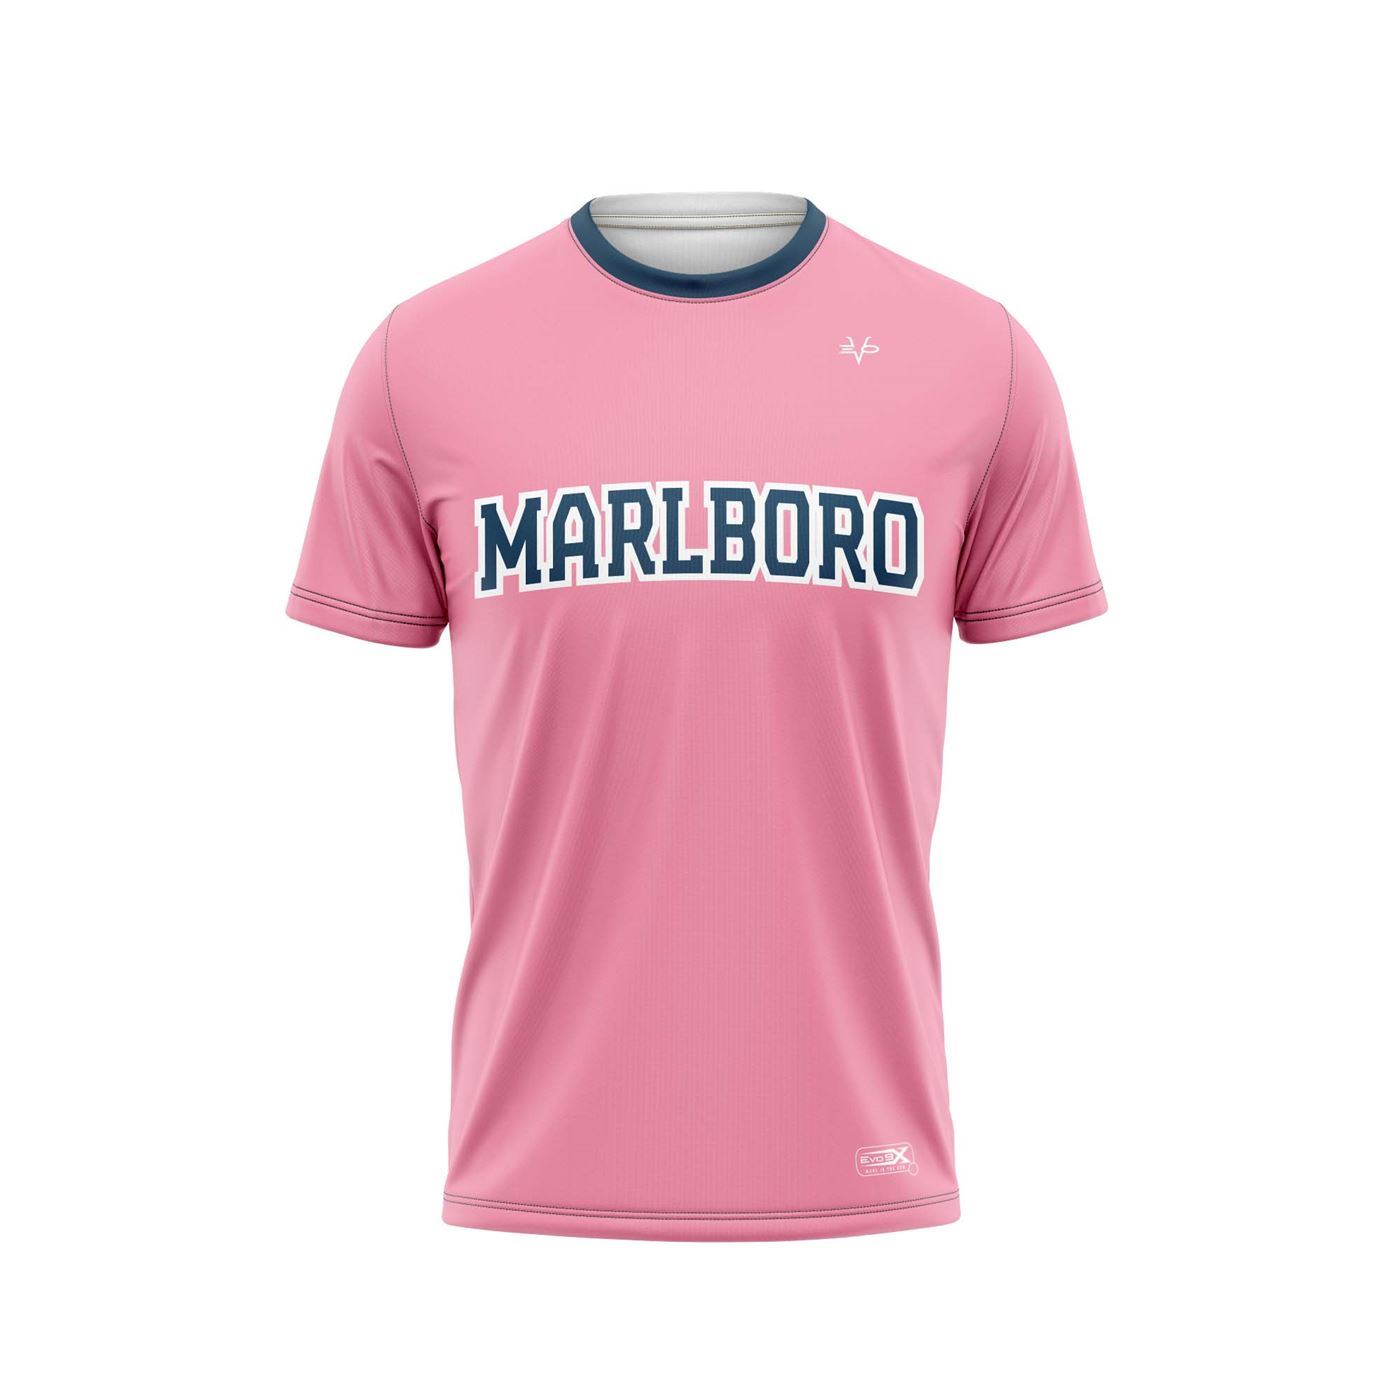 Marlboro Crew Neck Shirt Pink